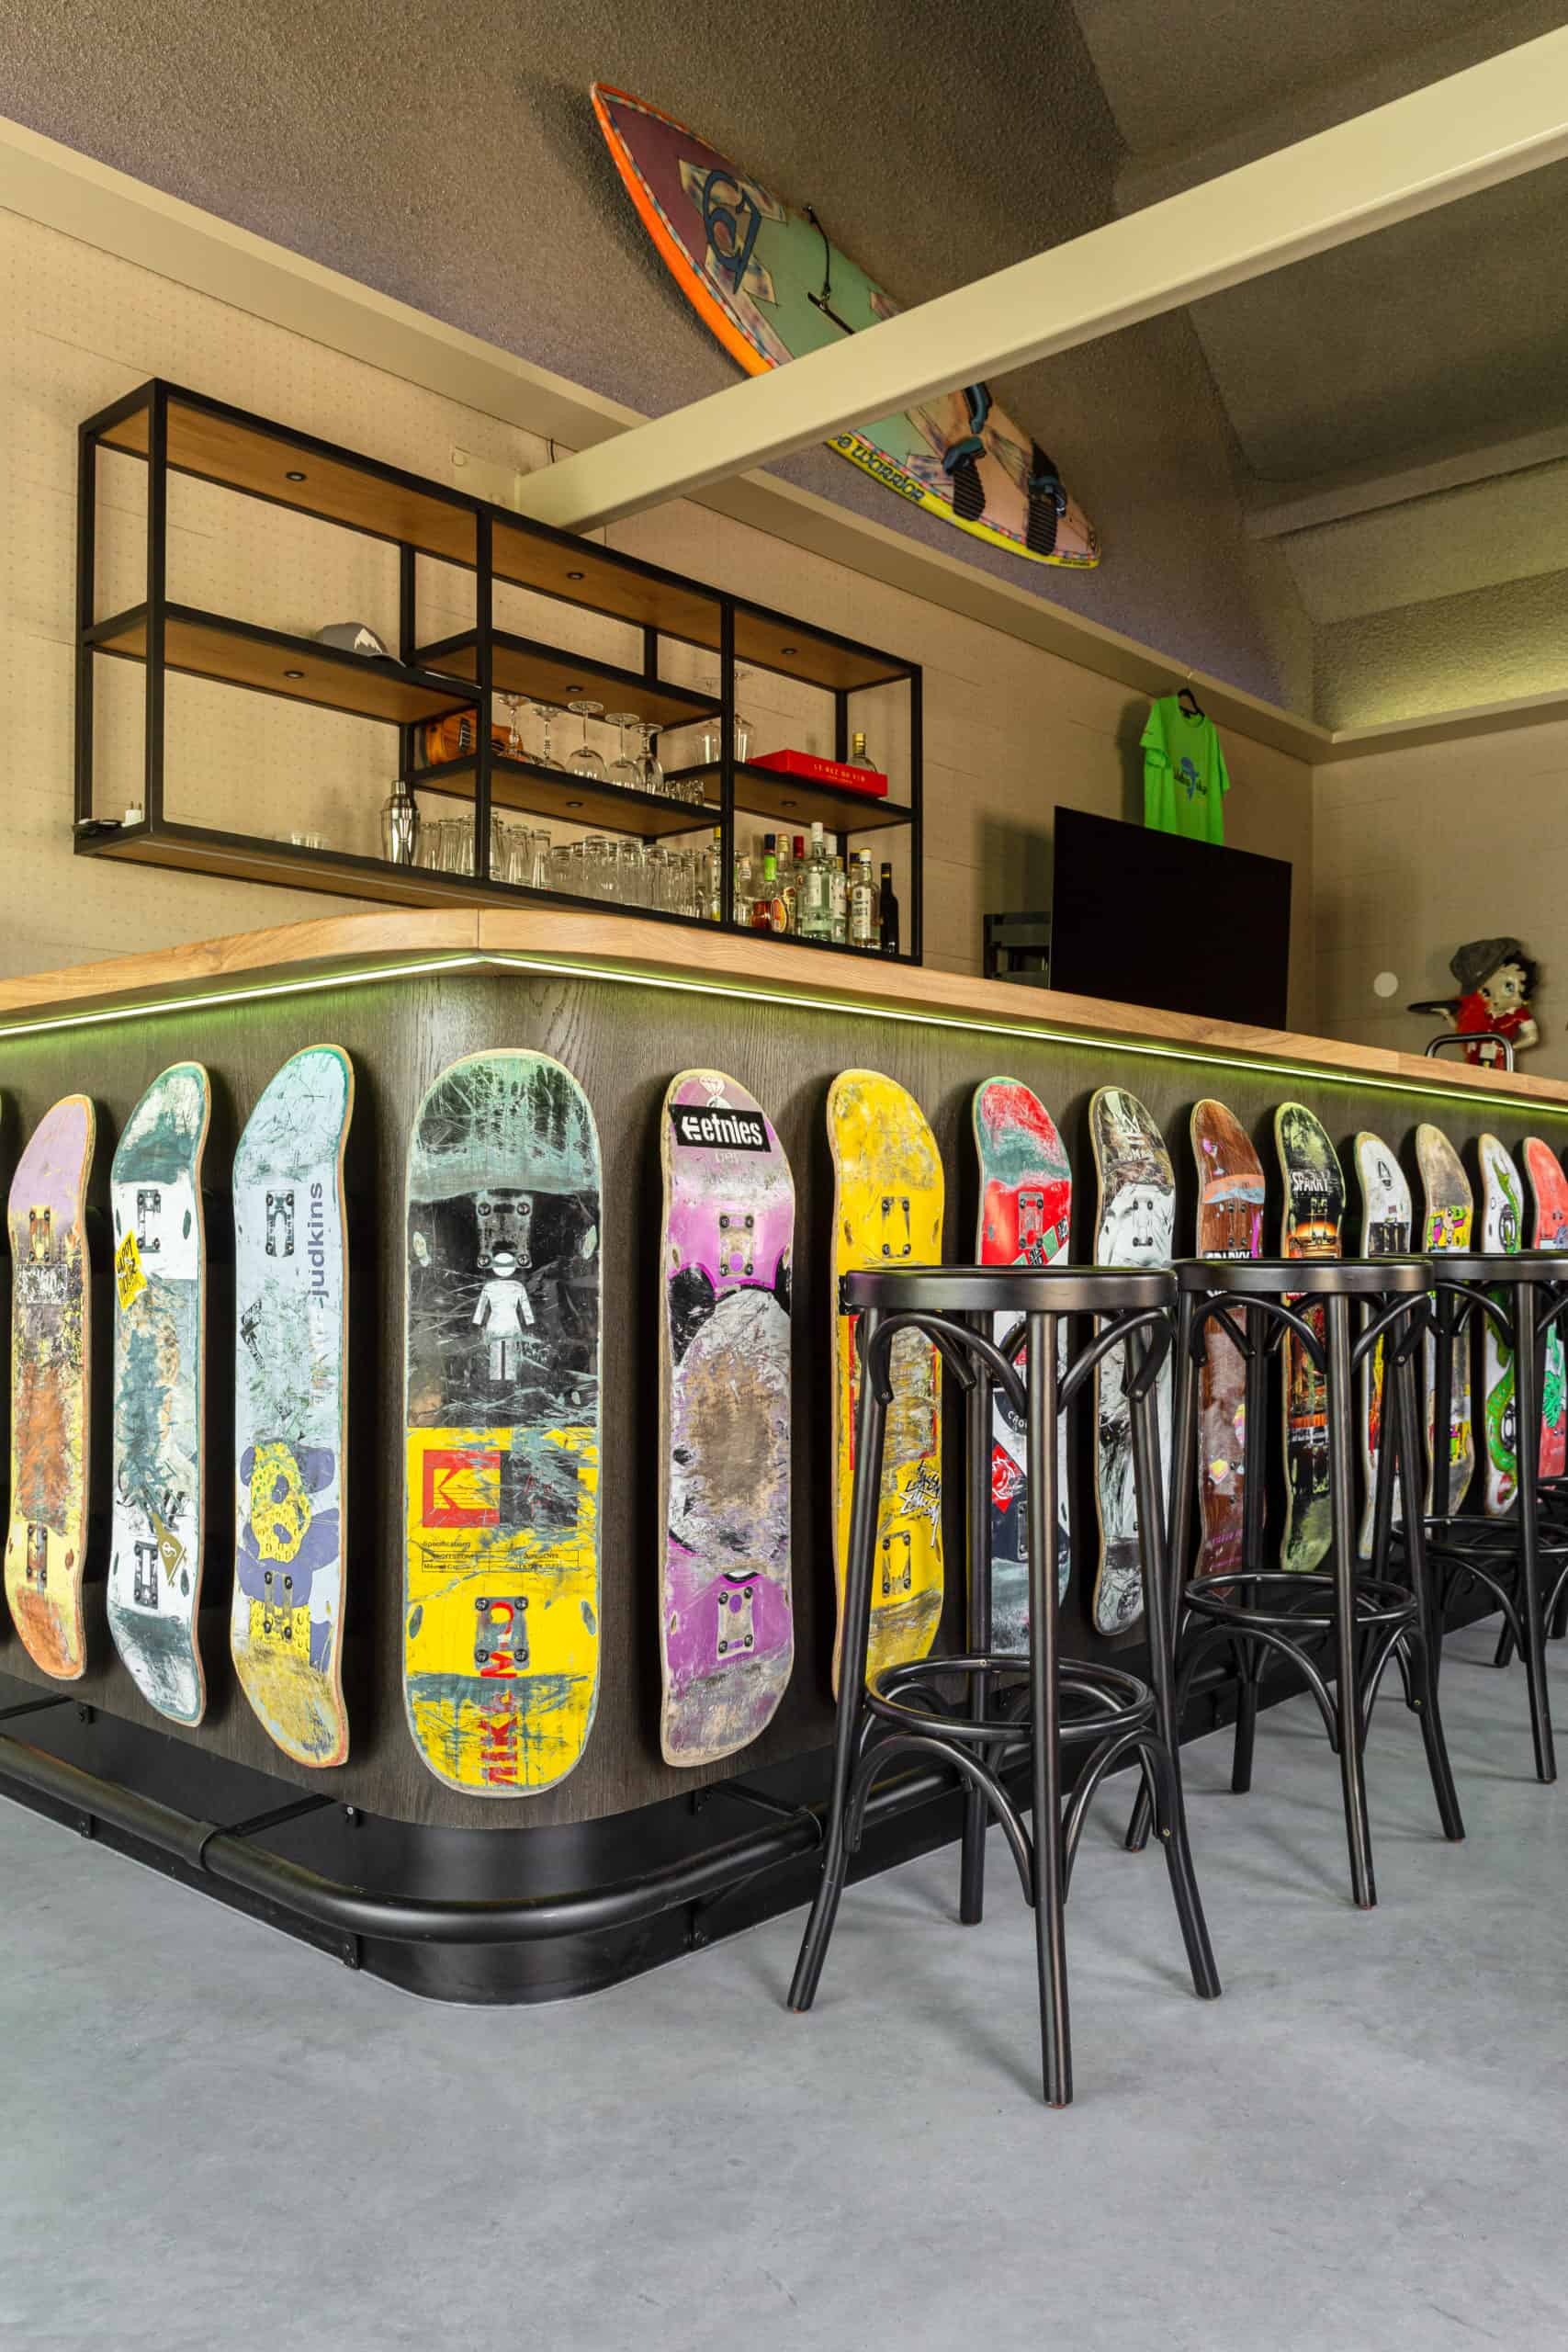 De bar in Oss. Deze is omringd met skateboards en er staan barkrukken omheen. De vloer is een gevlinderde betonvloer